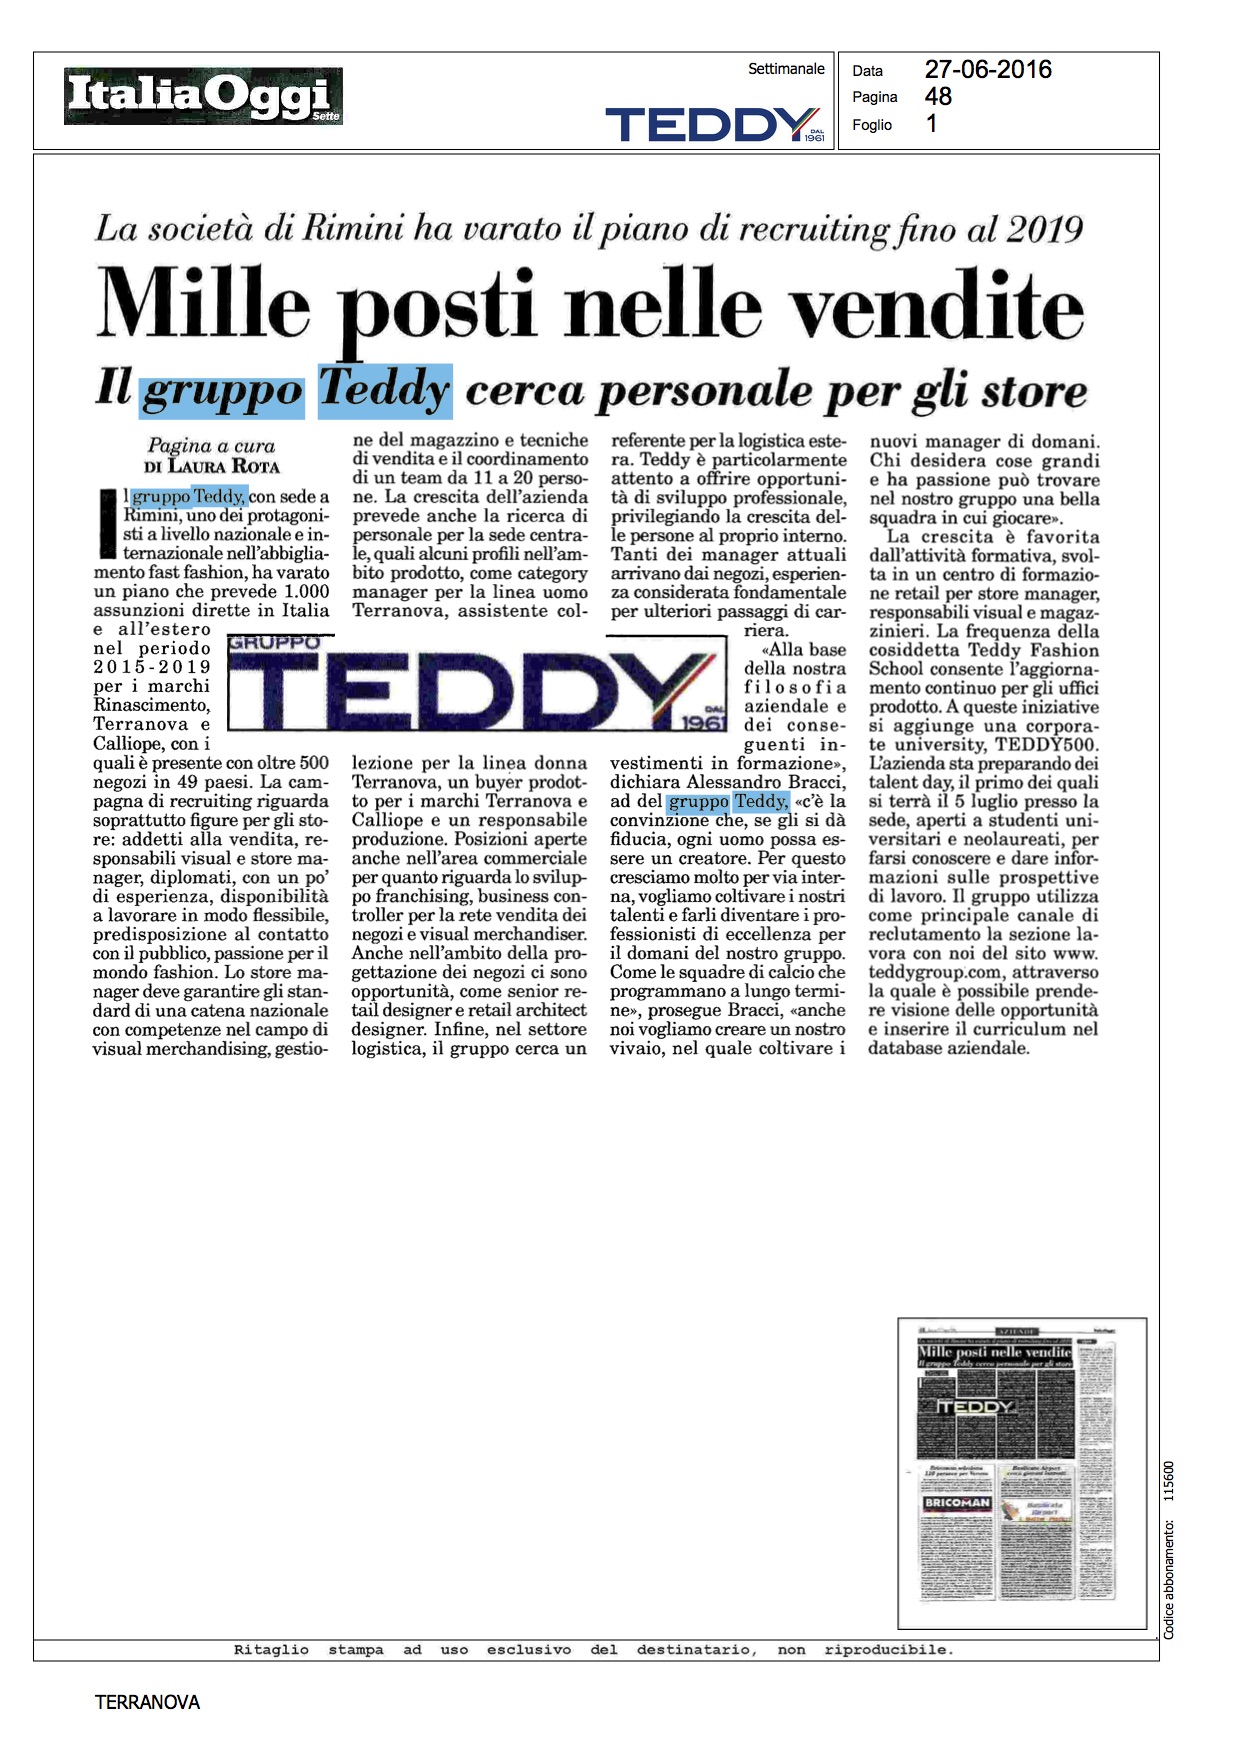 Teddy - Italia Oggi